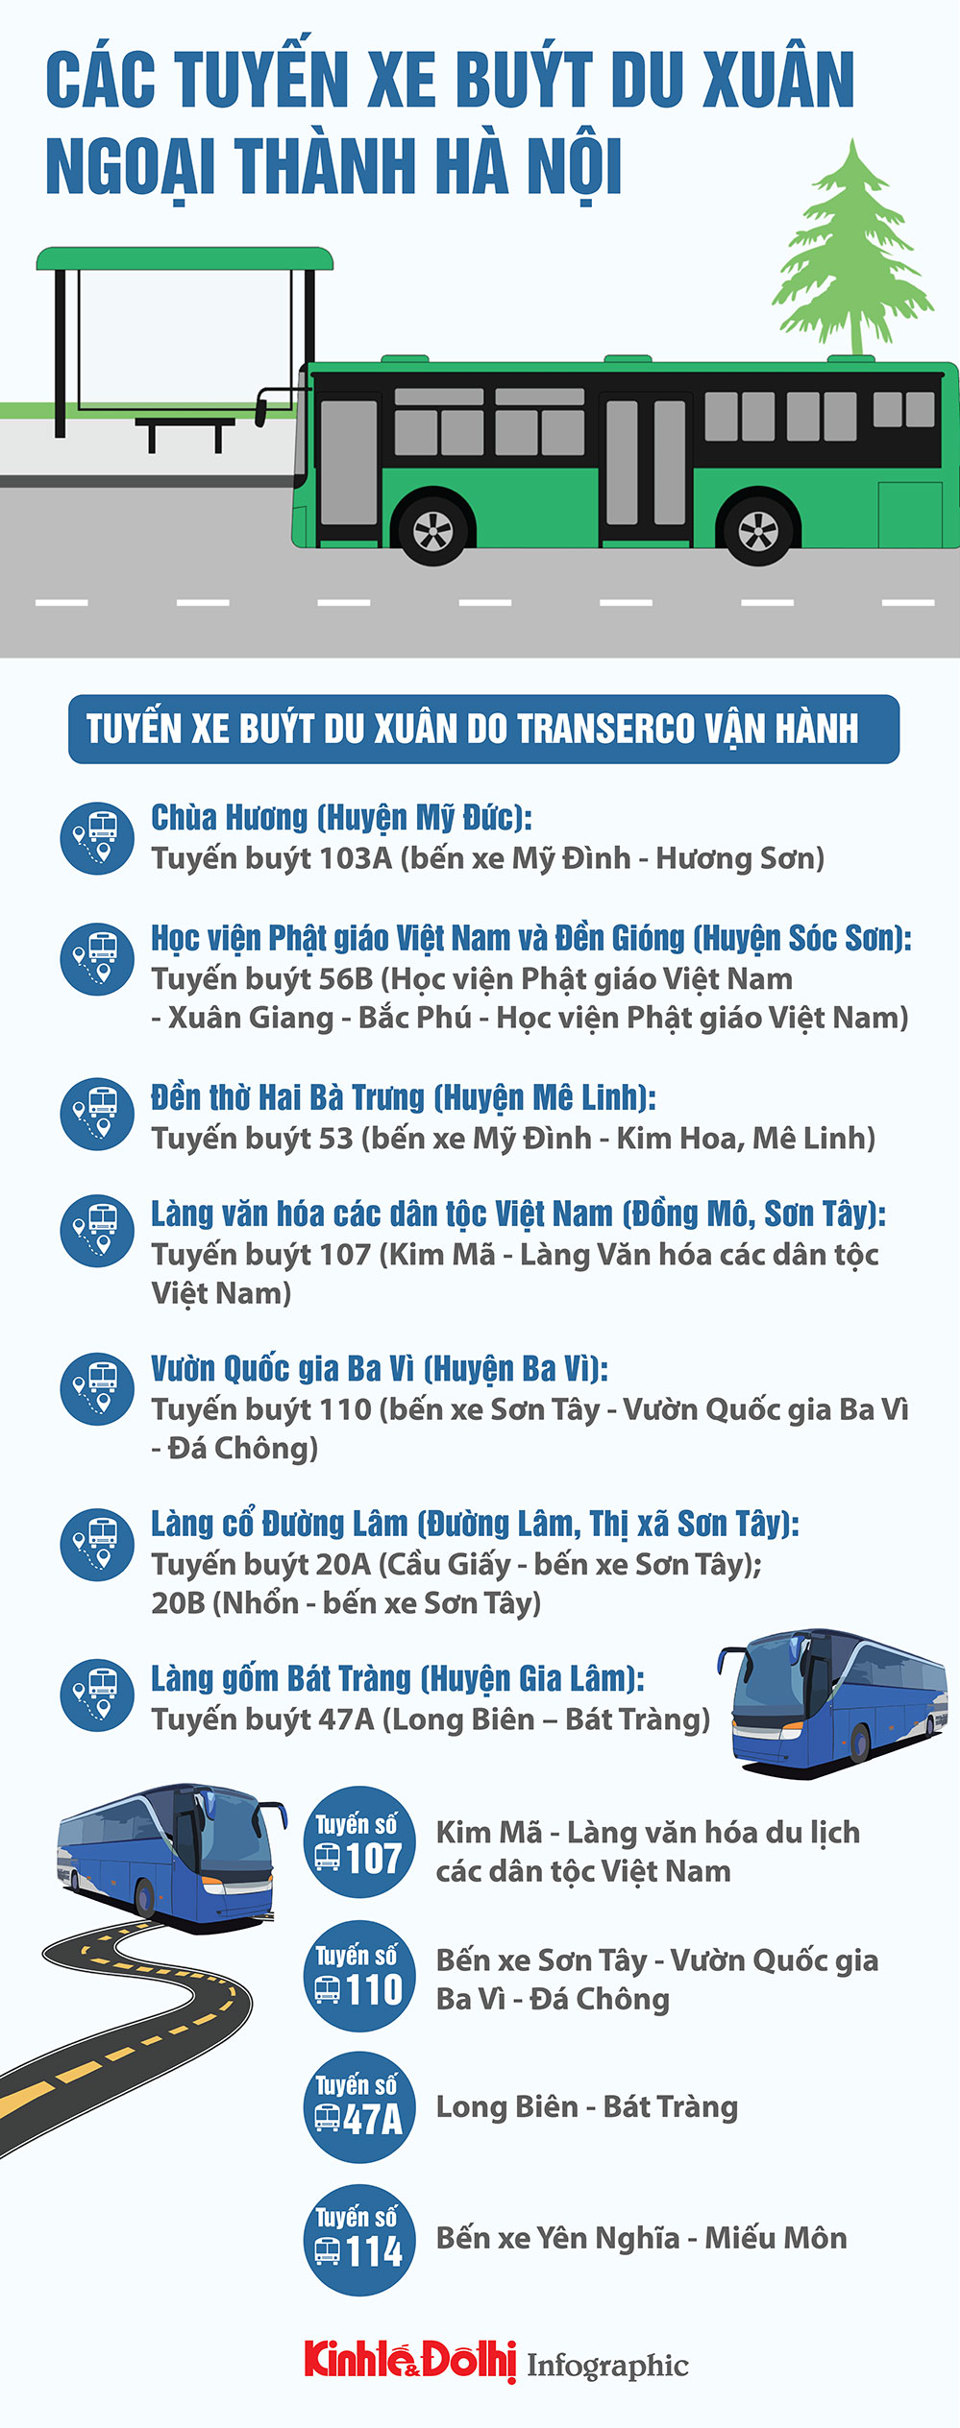 Du Xuân đến các điểm du lịch ngoại thành Hà Nội bằng những tuyến buýt nào? - Ảnh 1